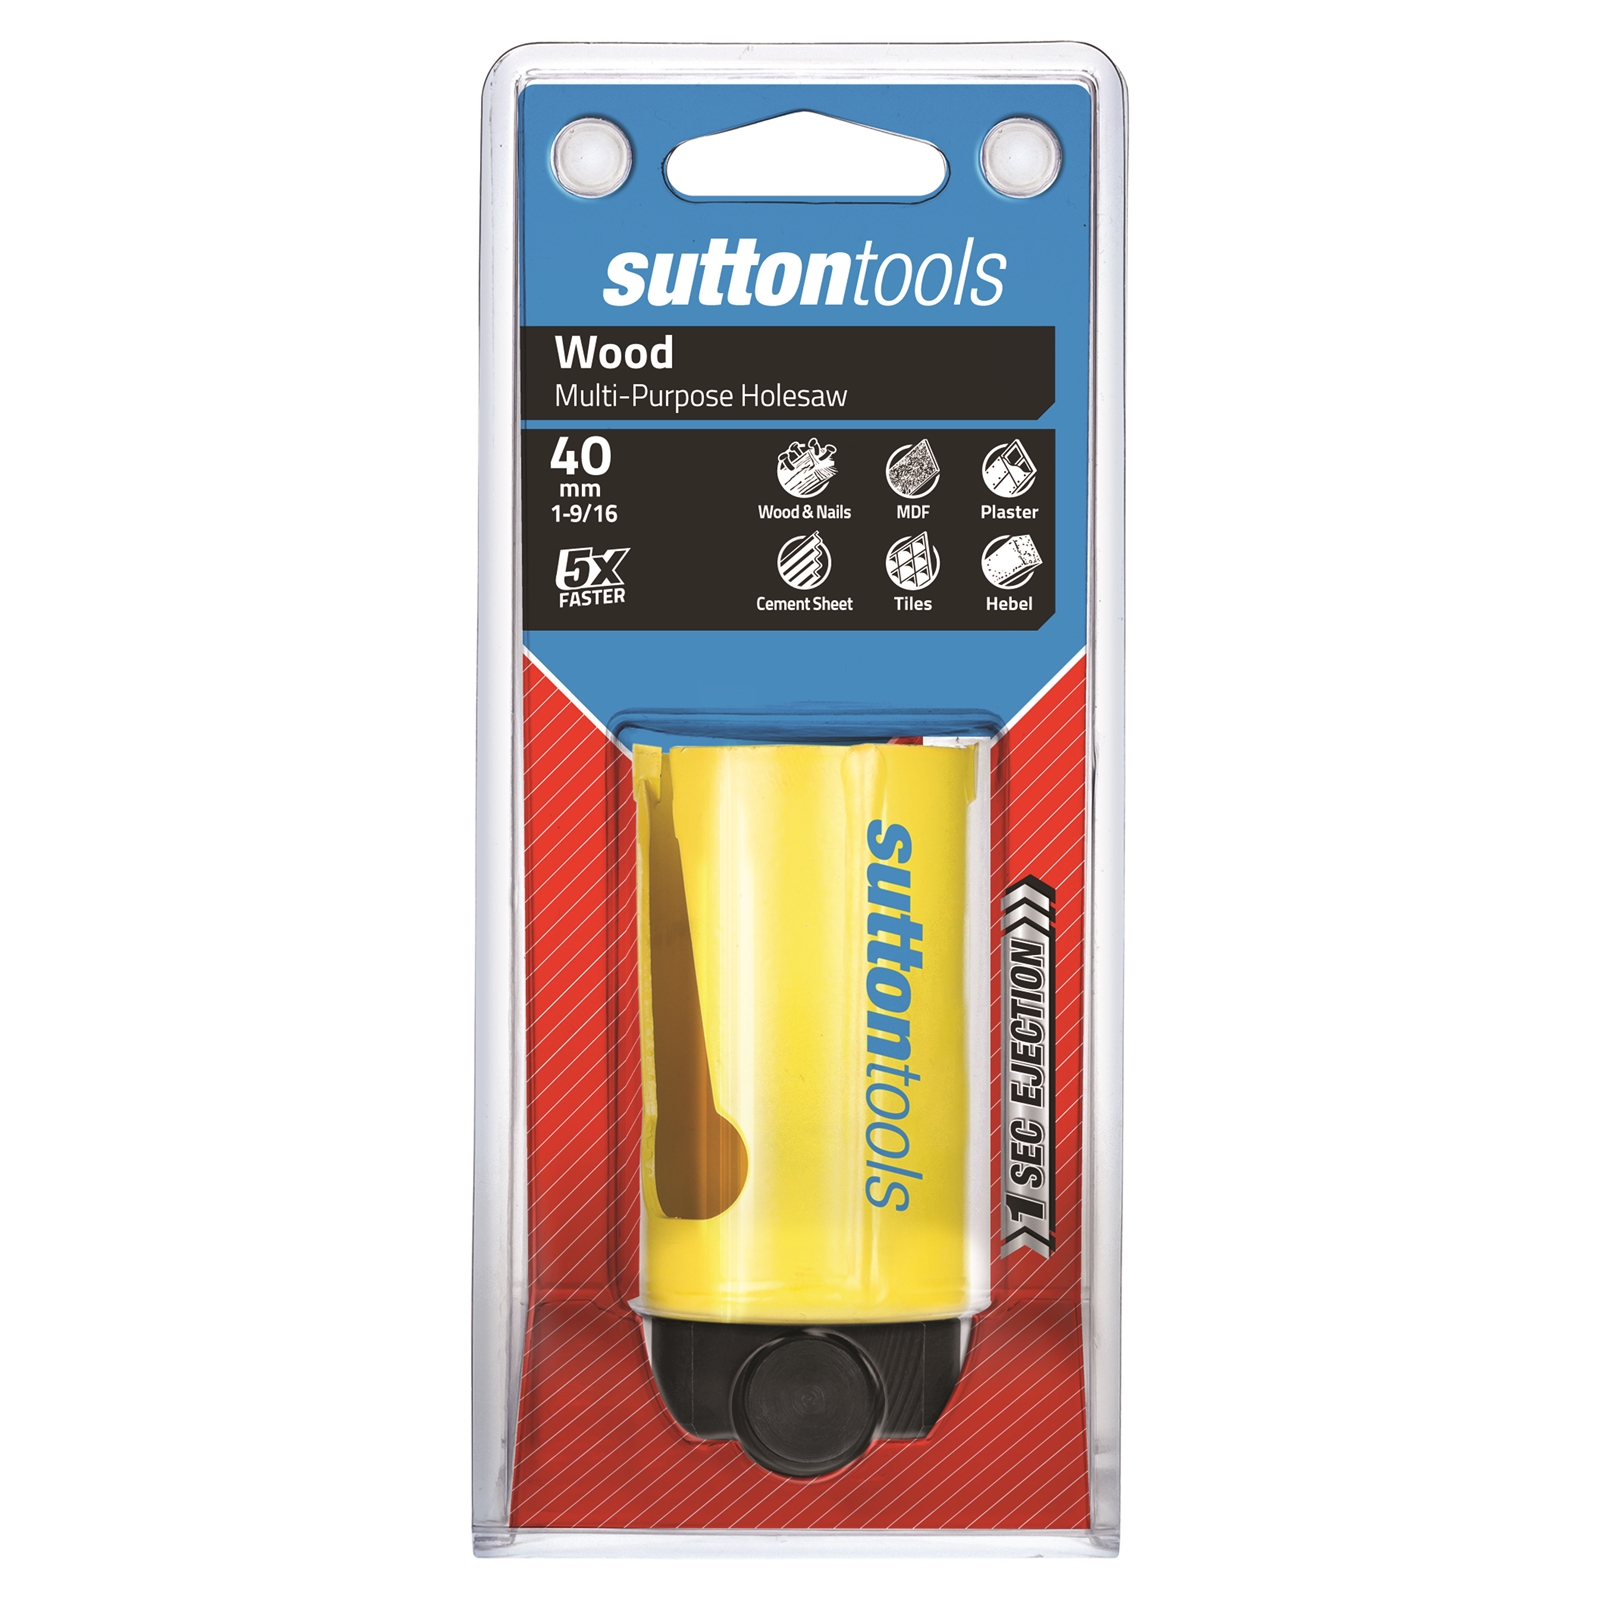 Sutton Tools 40mm Multipurpose Holesaw